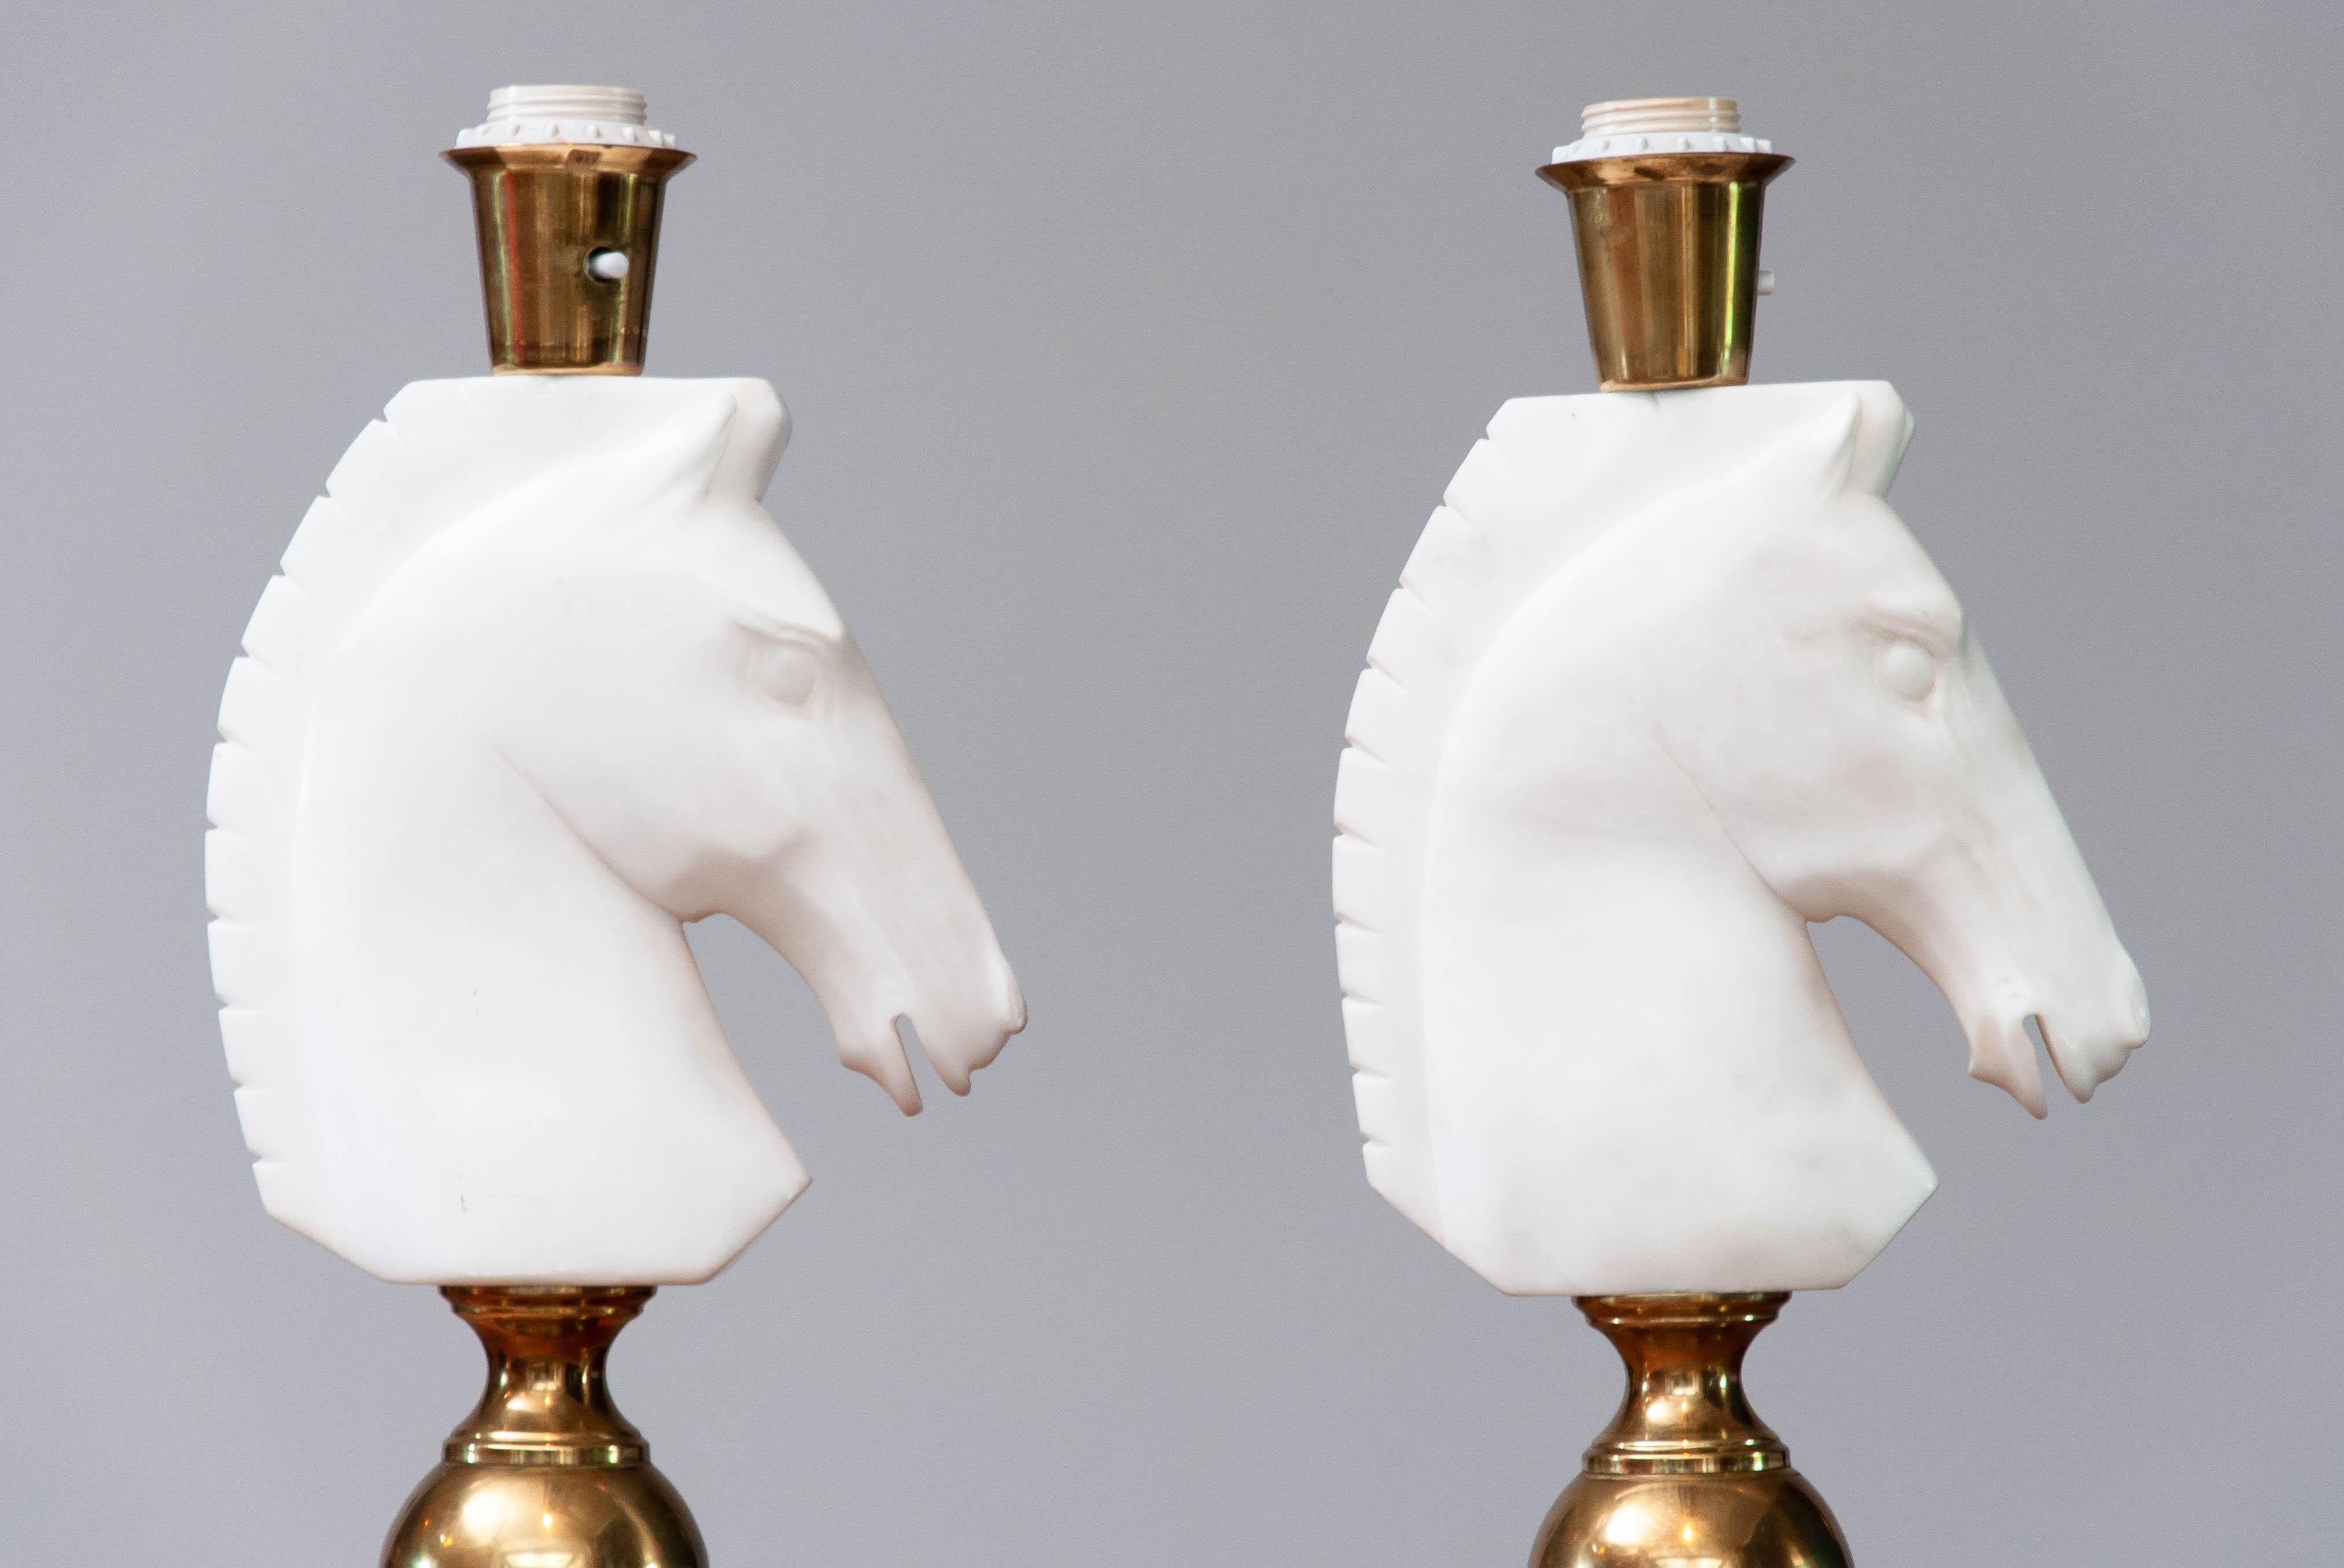 Magnifique et absolument rare ensemble de deux lampes de table assorties en laiton avec de belles têtes de cheval en albâtre italien taillées à la main. Ces deux chefs-d'œuvre, combinés à de superbes nuances, créeront une ambiance fabuleuse dans